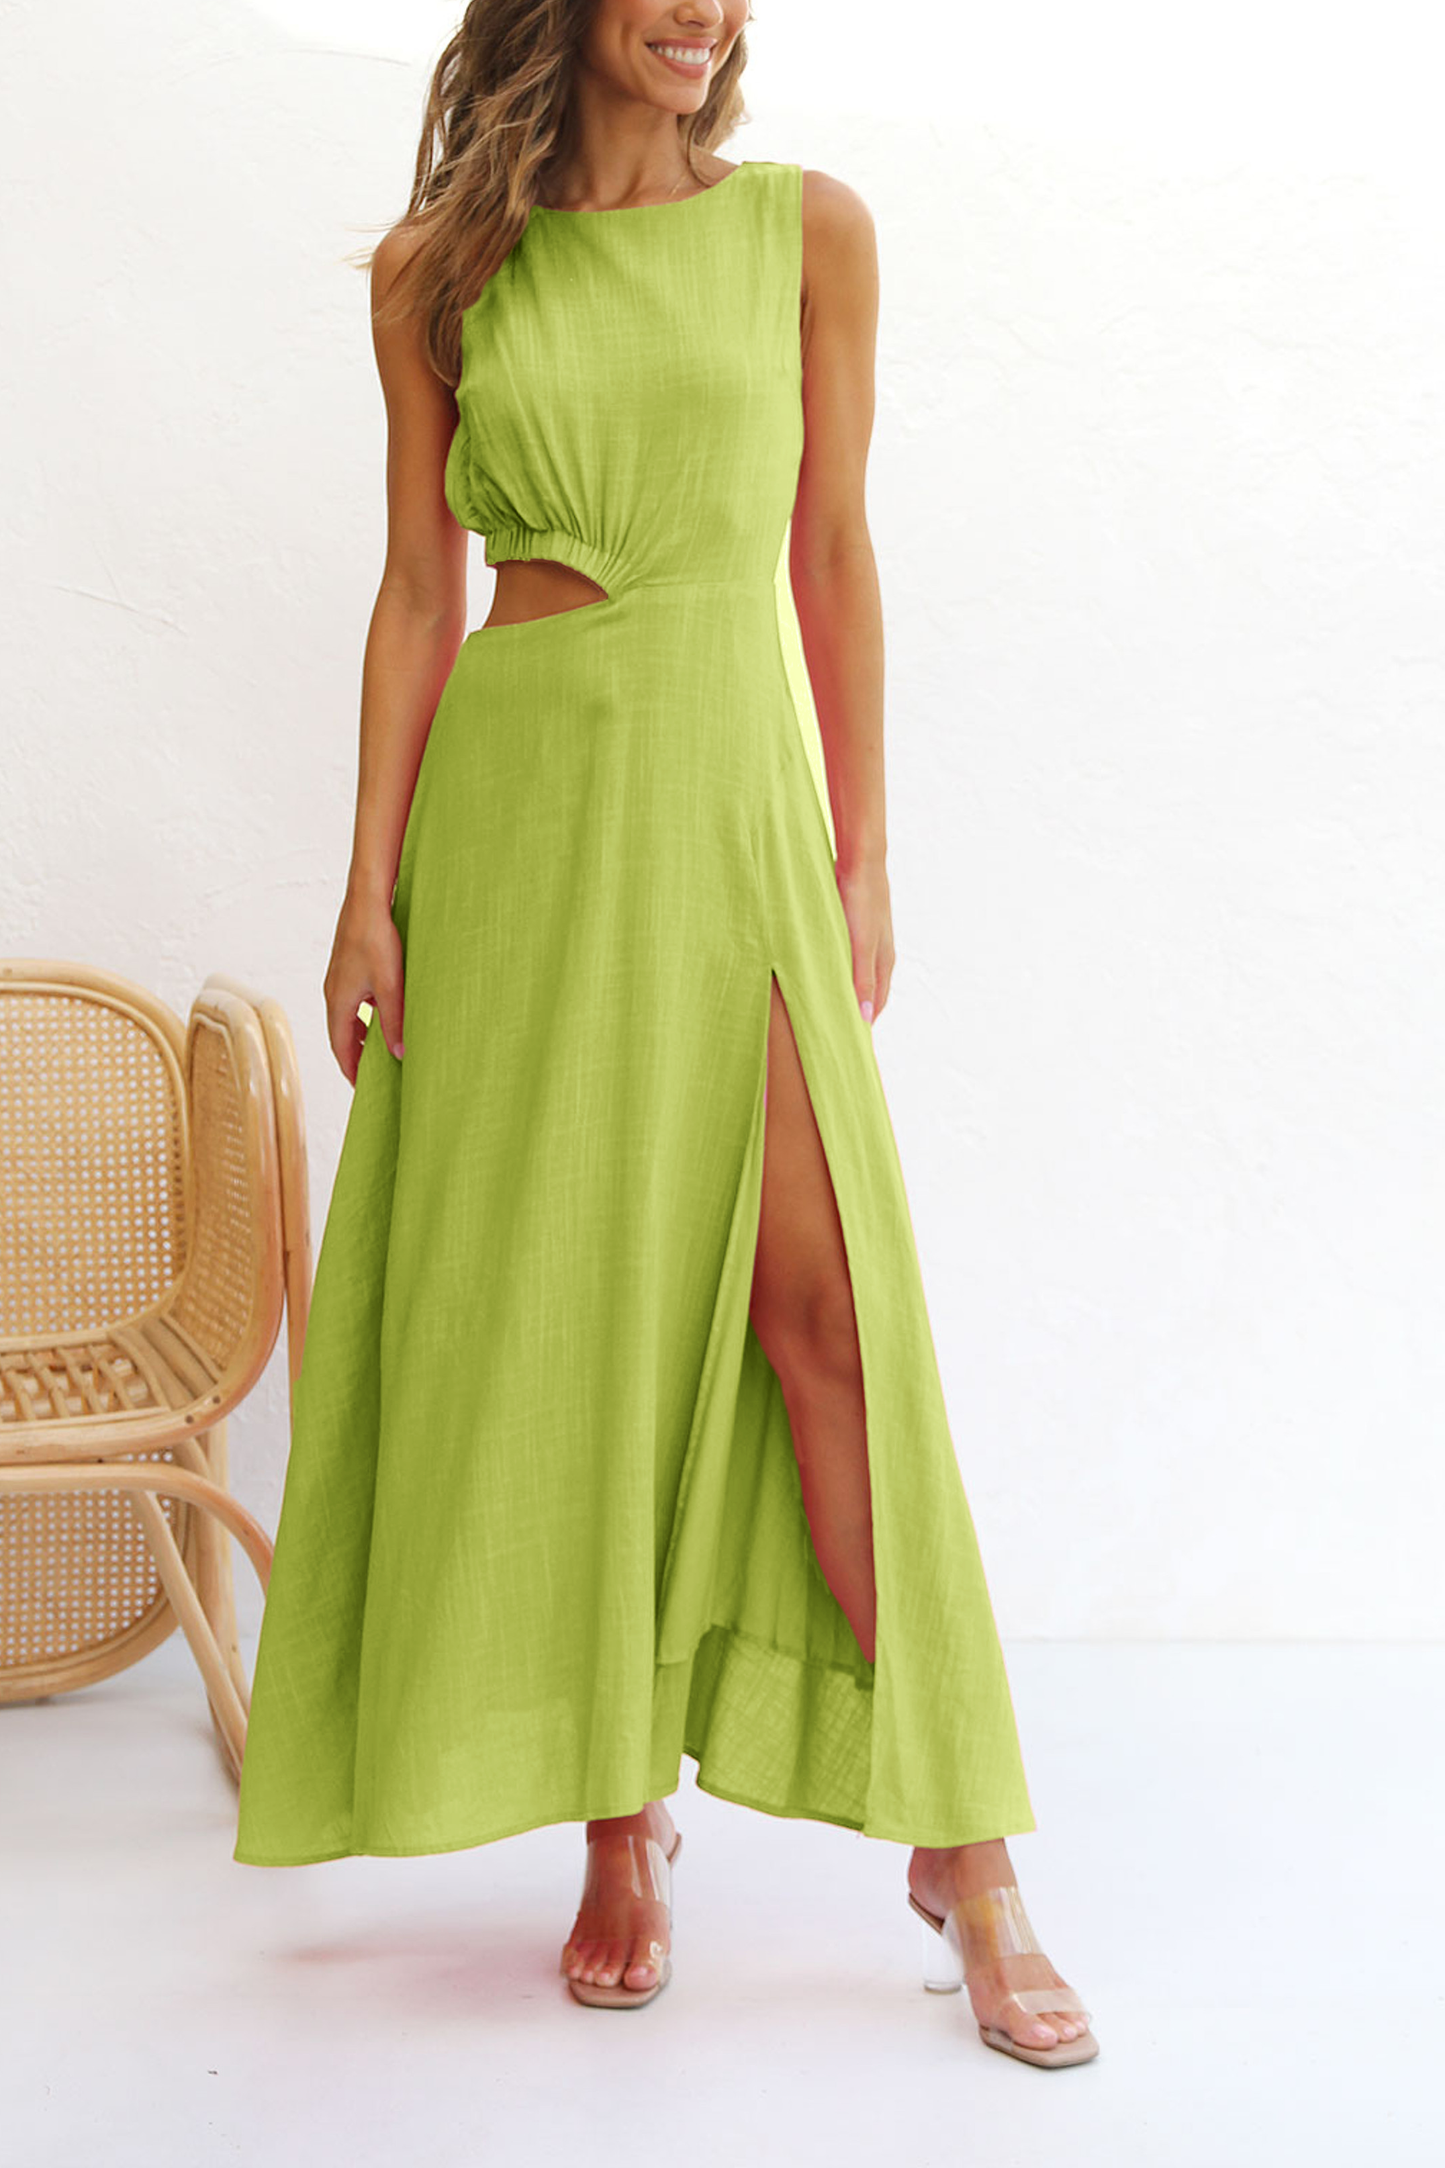 NTG Fad Dress Green / S Cotton linen open waist side slit long skirt